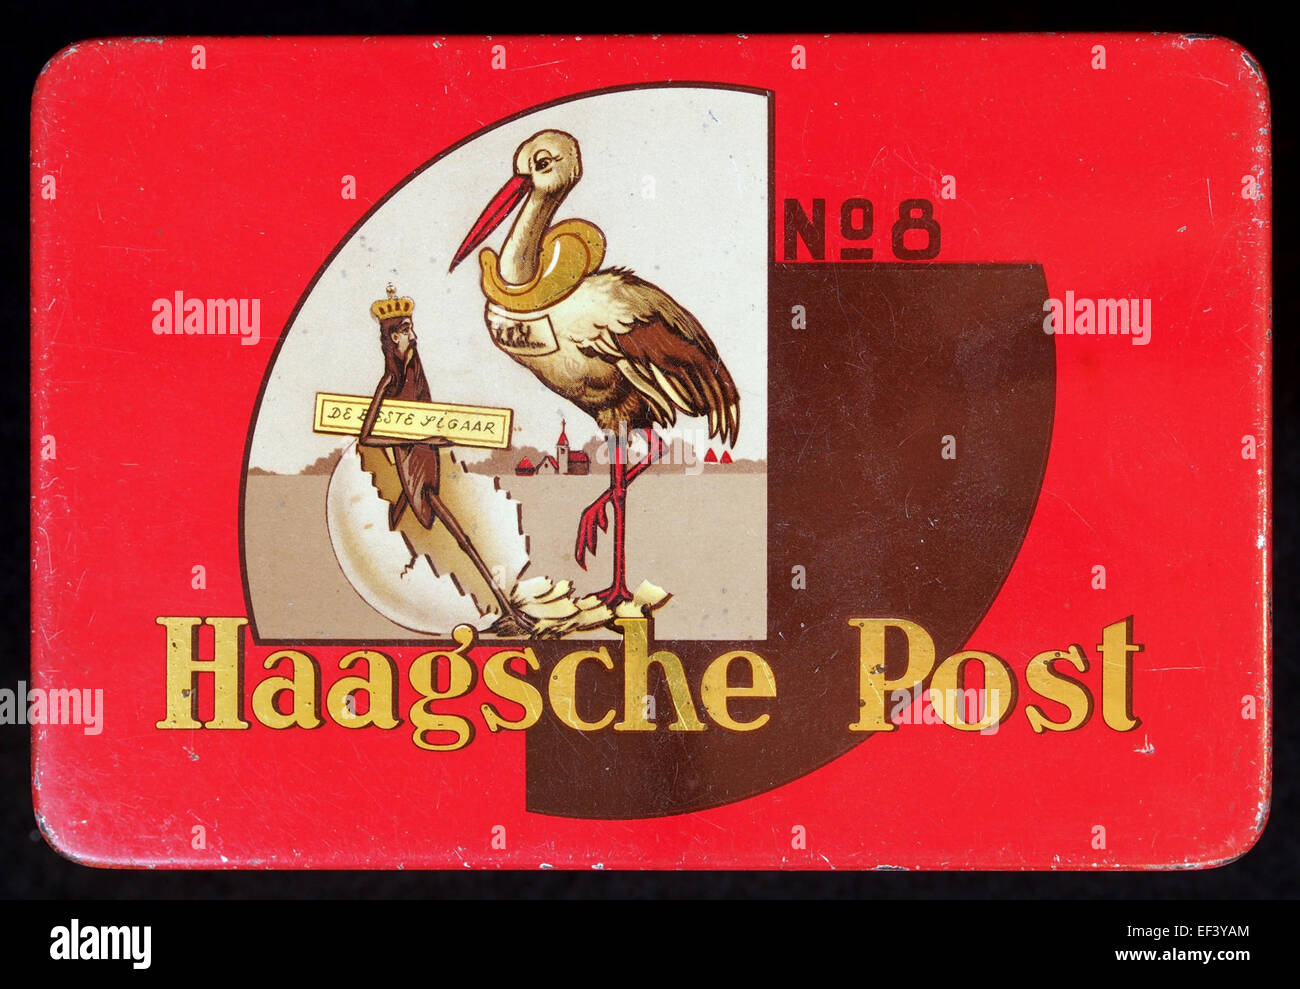 Haagsche Post No 8 sigarenblikje Stock Photo